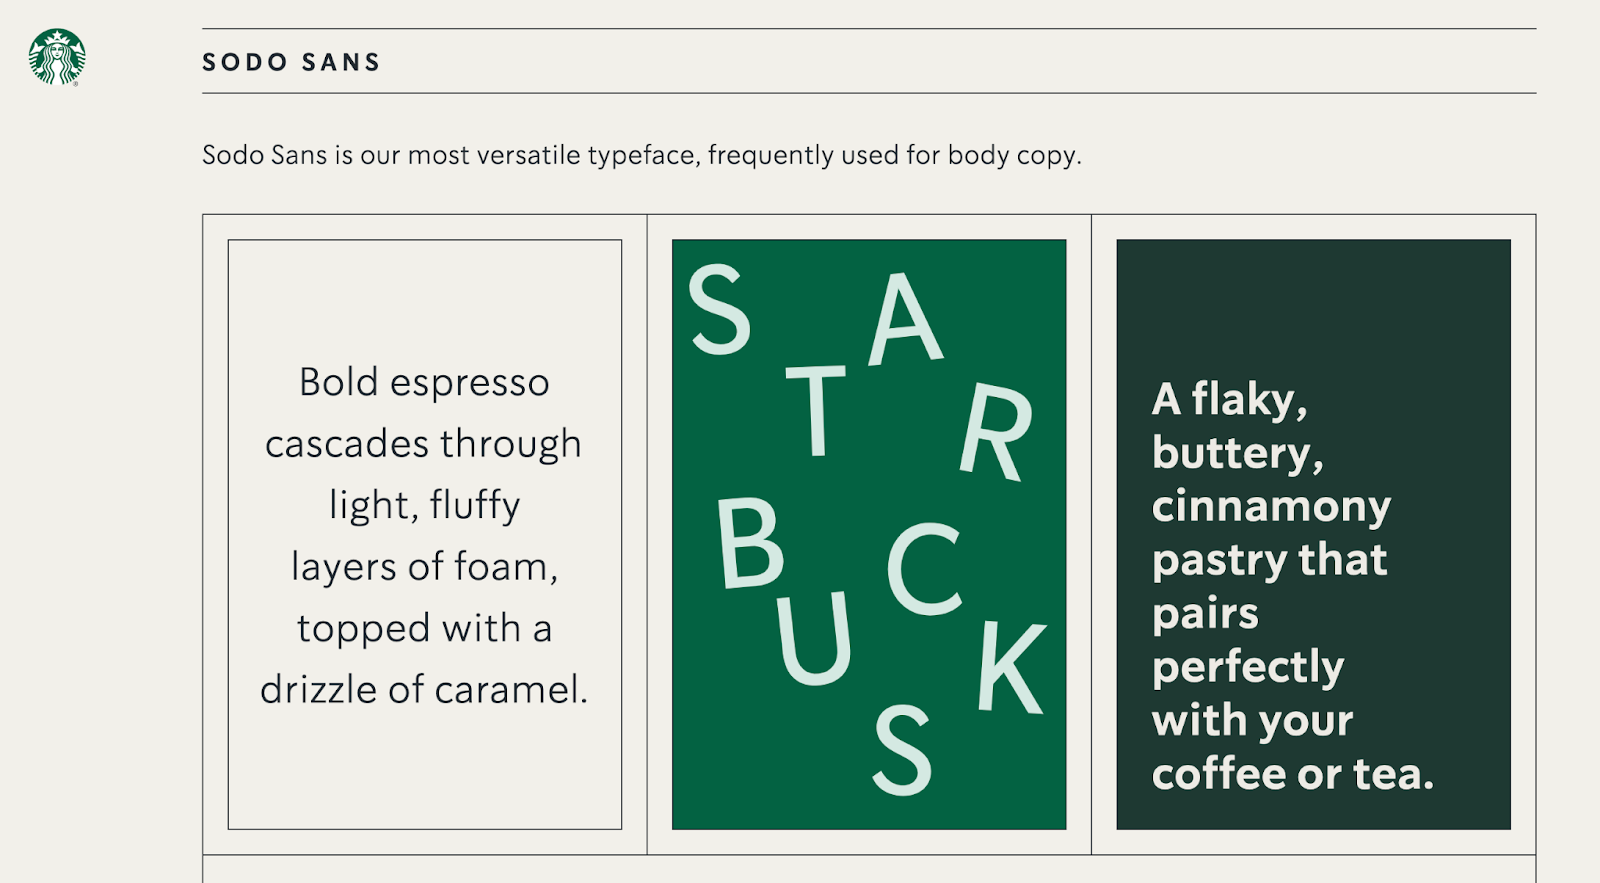 Directives de la marque Starbucks